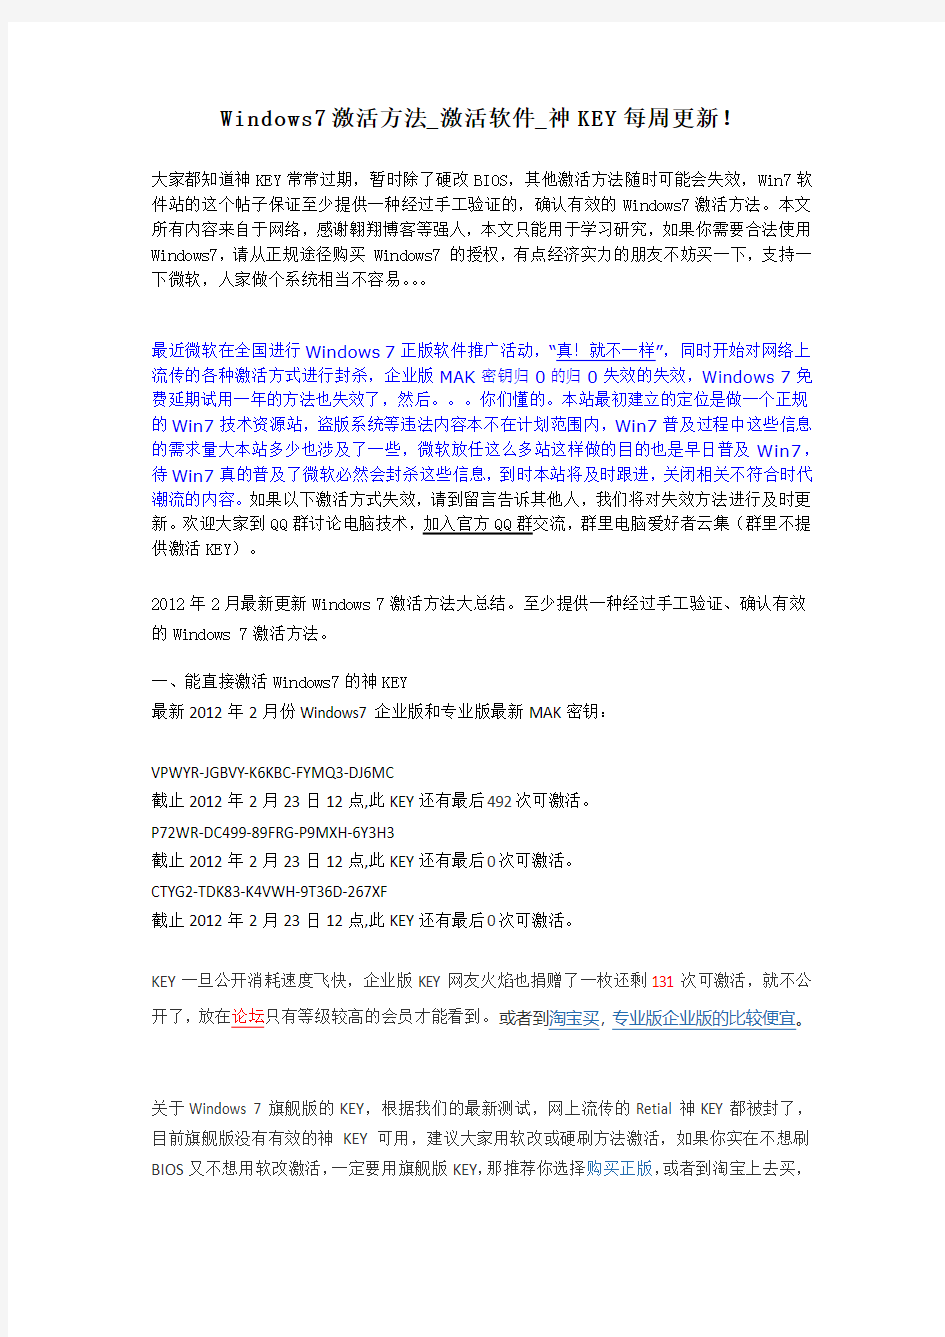 Win7激活方法_激活软件_神KEY_2012年2月22日更新